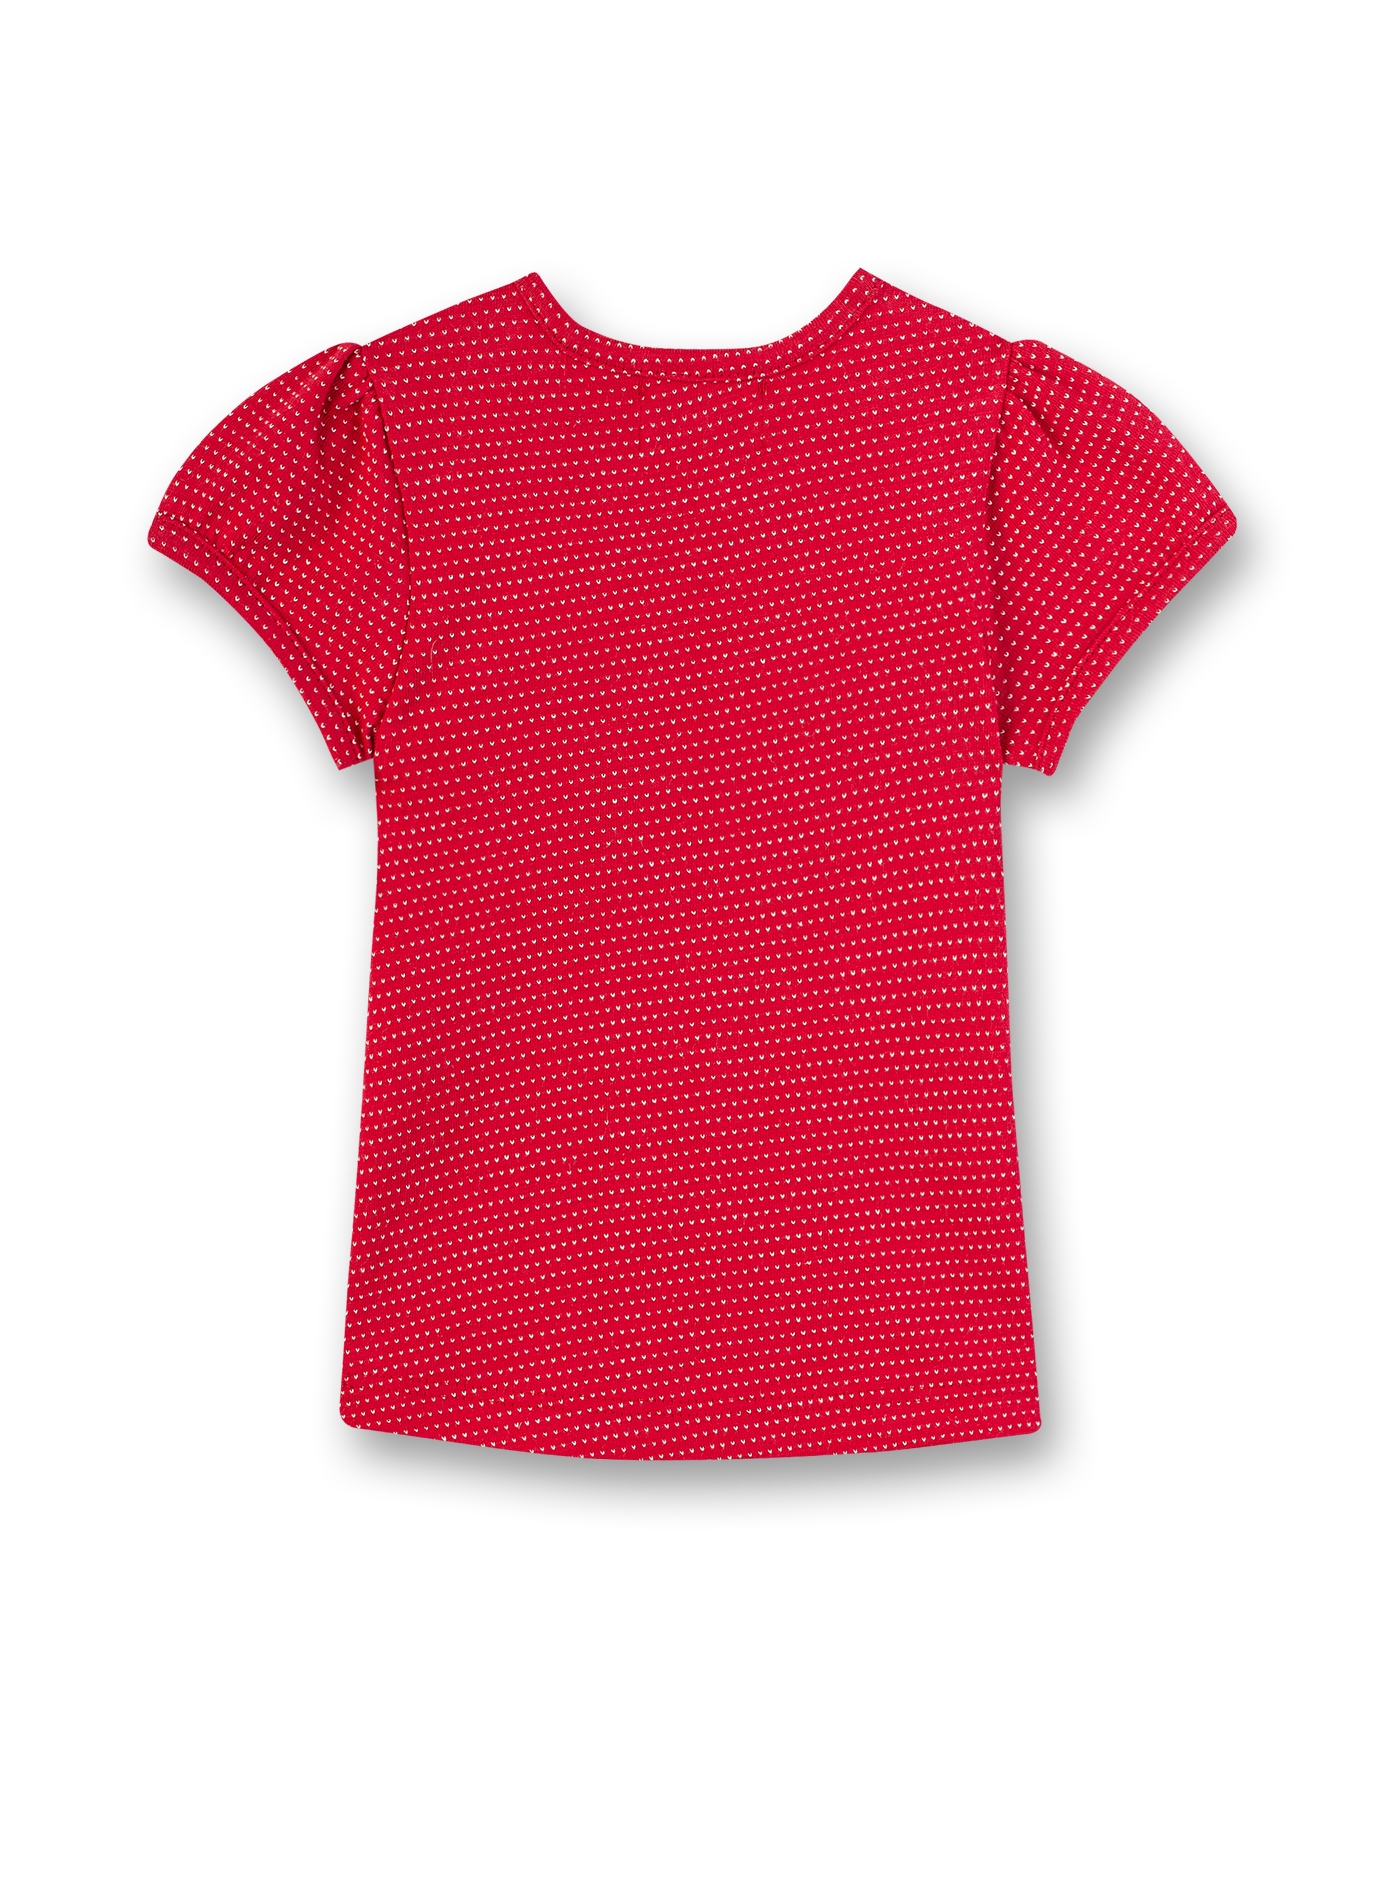 Mädchen T-Shirt Rot Sweet Puppy